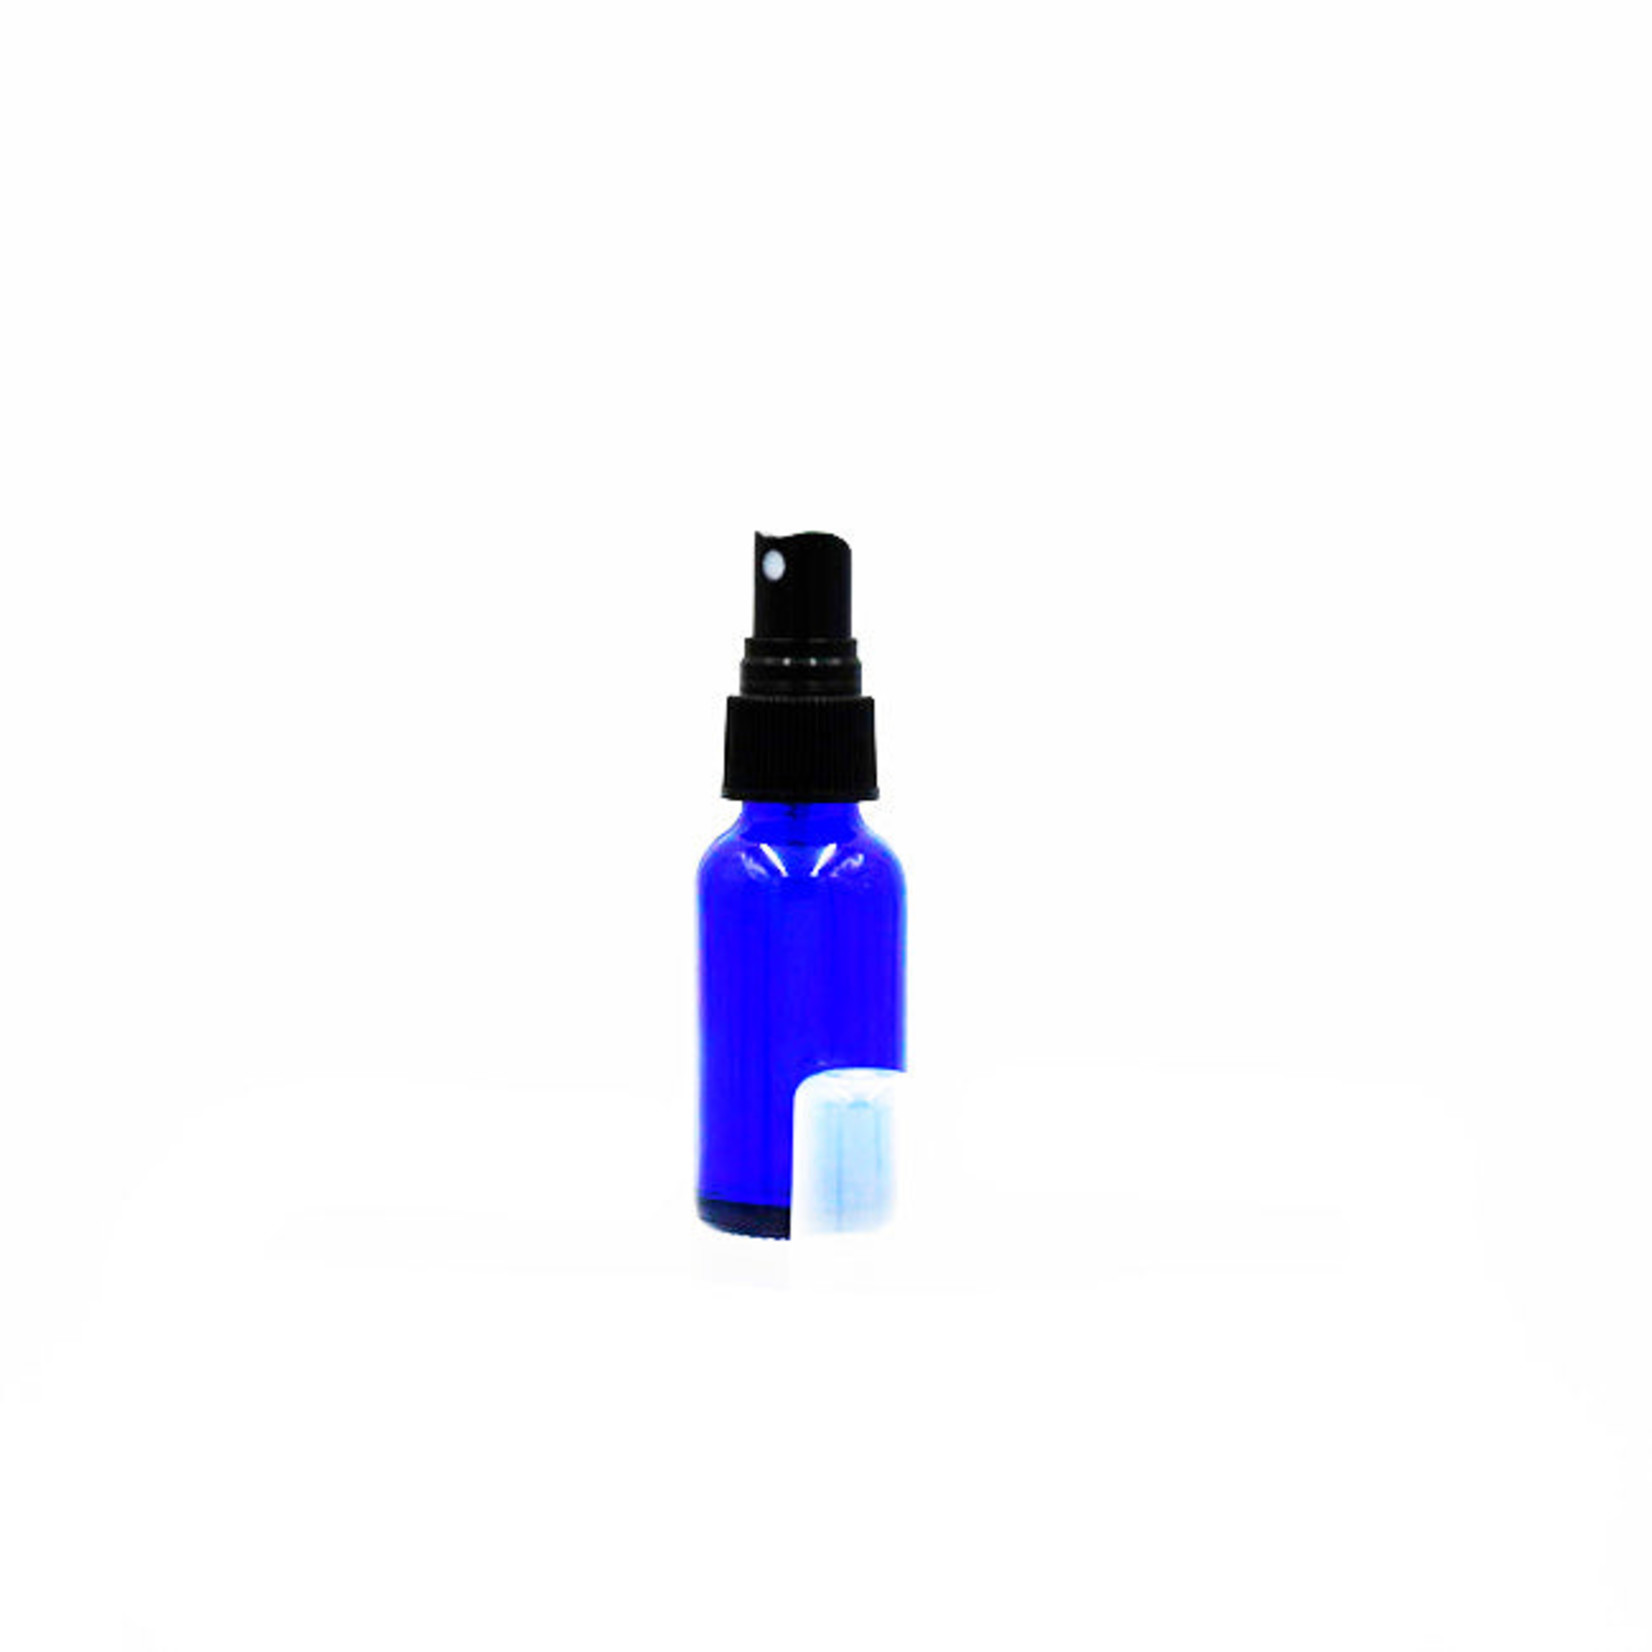 Wyndmere Wyndmere - Cobalt Blue Glass Bottle With Mist Sprayer - 0.5 oz